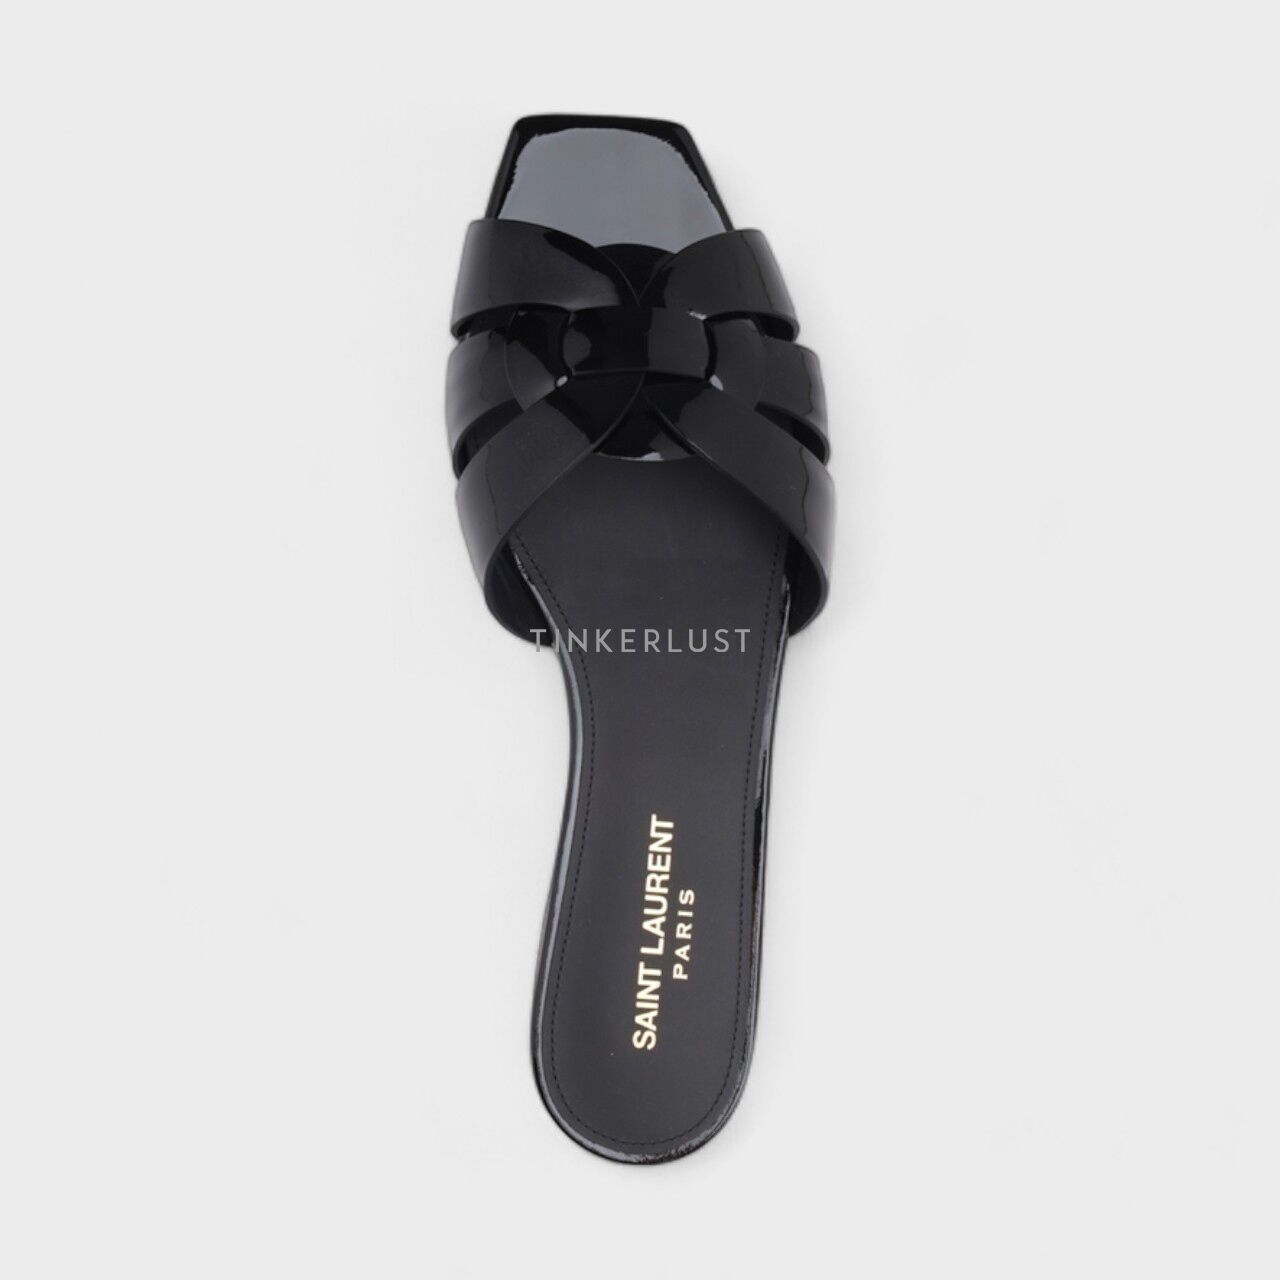 Saint Laurent Nu Pieds Tribute Slippers Black Patent Sandals